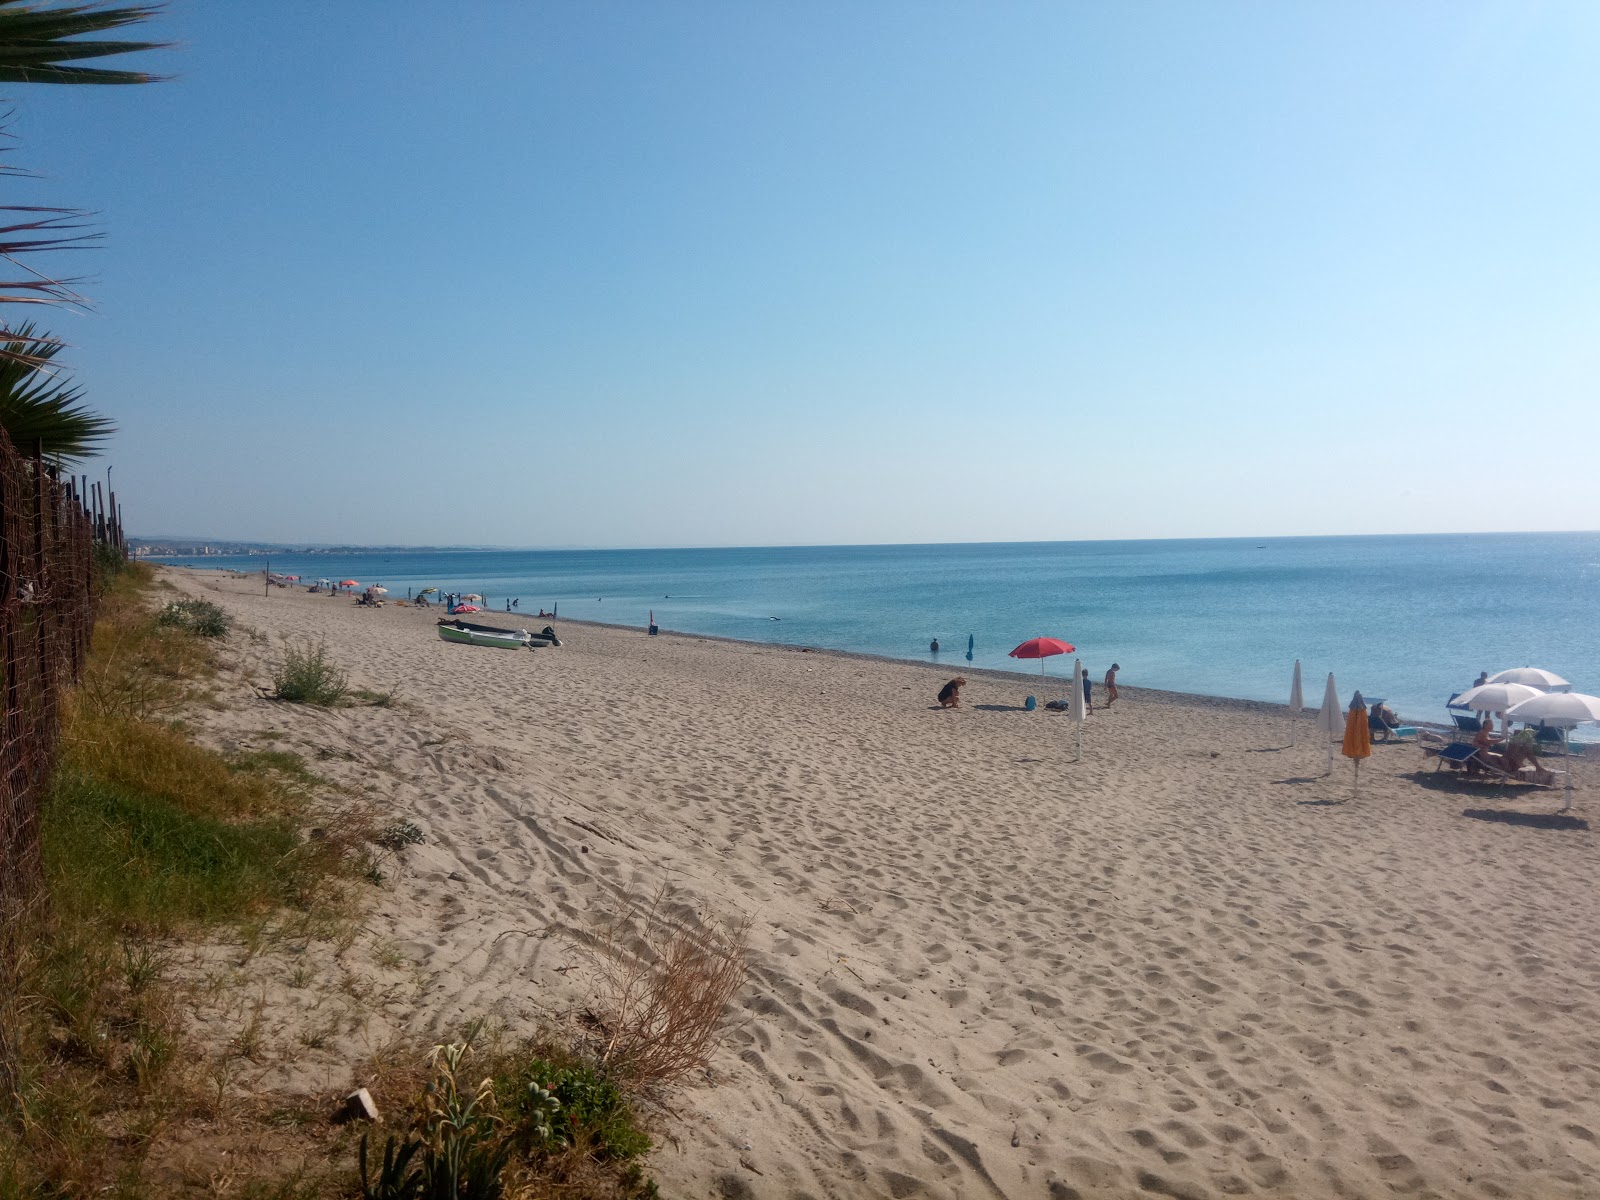 Villaggio le Roccelle beach'in fotoğrafı parlak kum yüzey ile